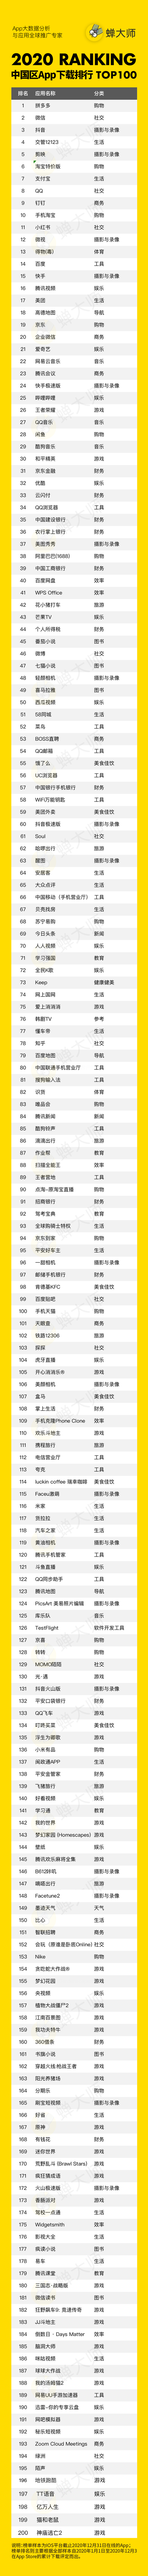 2 蝉大师2020年度榜单-中国区App下载排行Top200.png